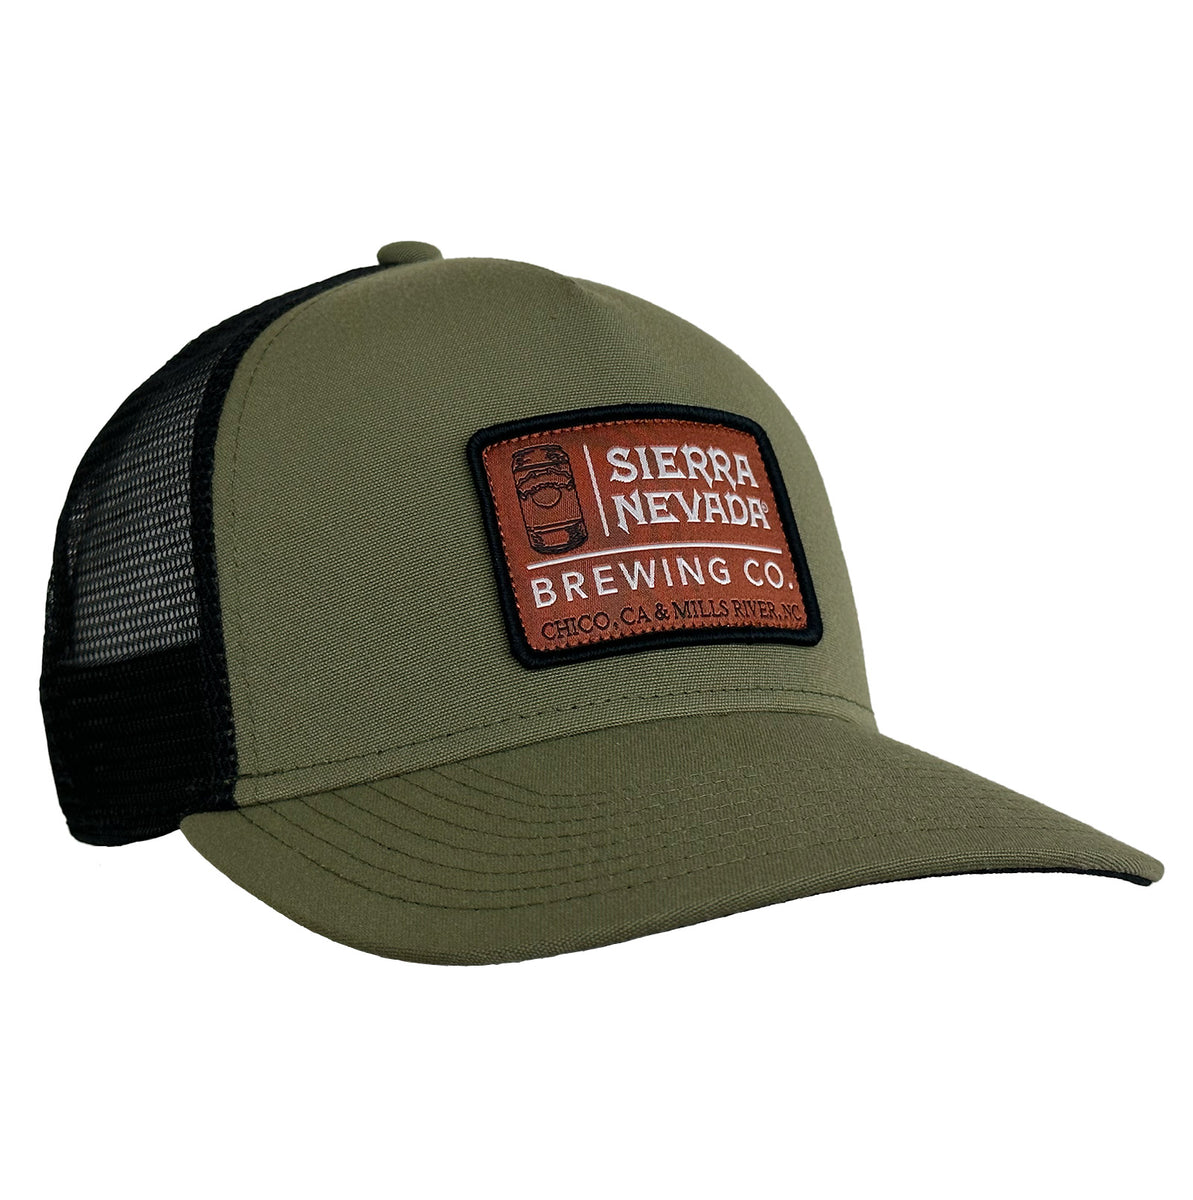 Sierra Nevada Brewing Co. Brewery Info Trucker Hat